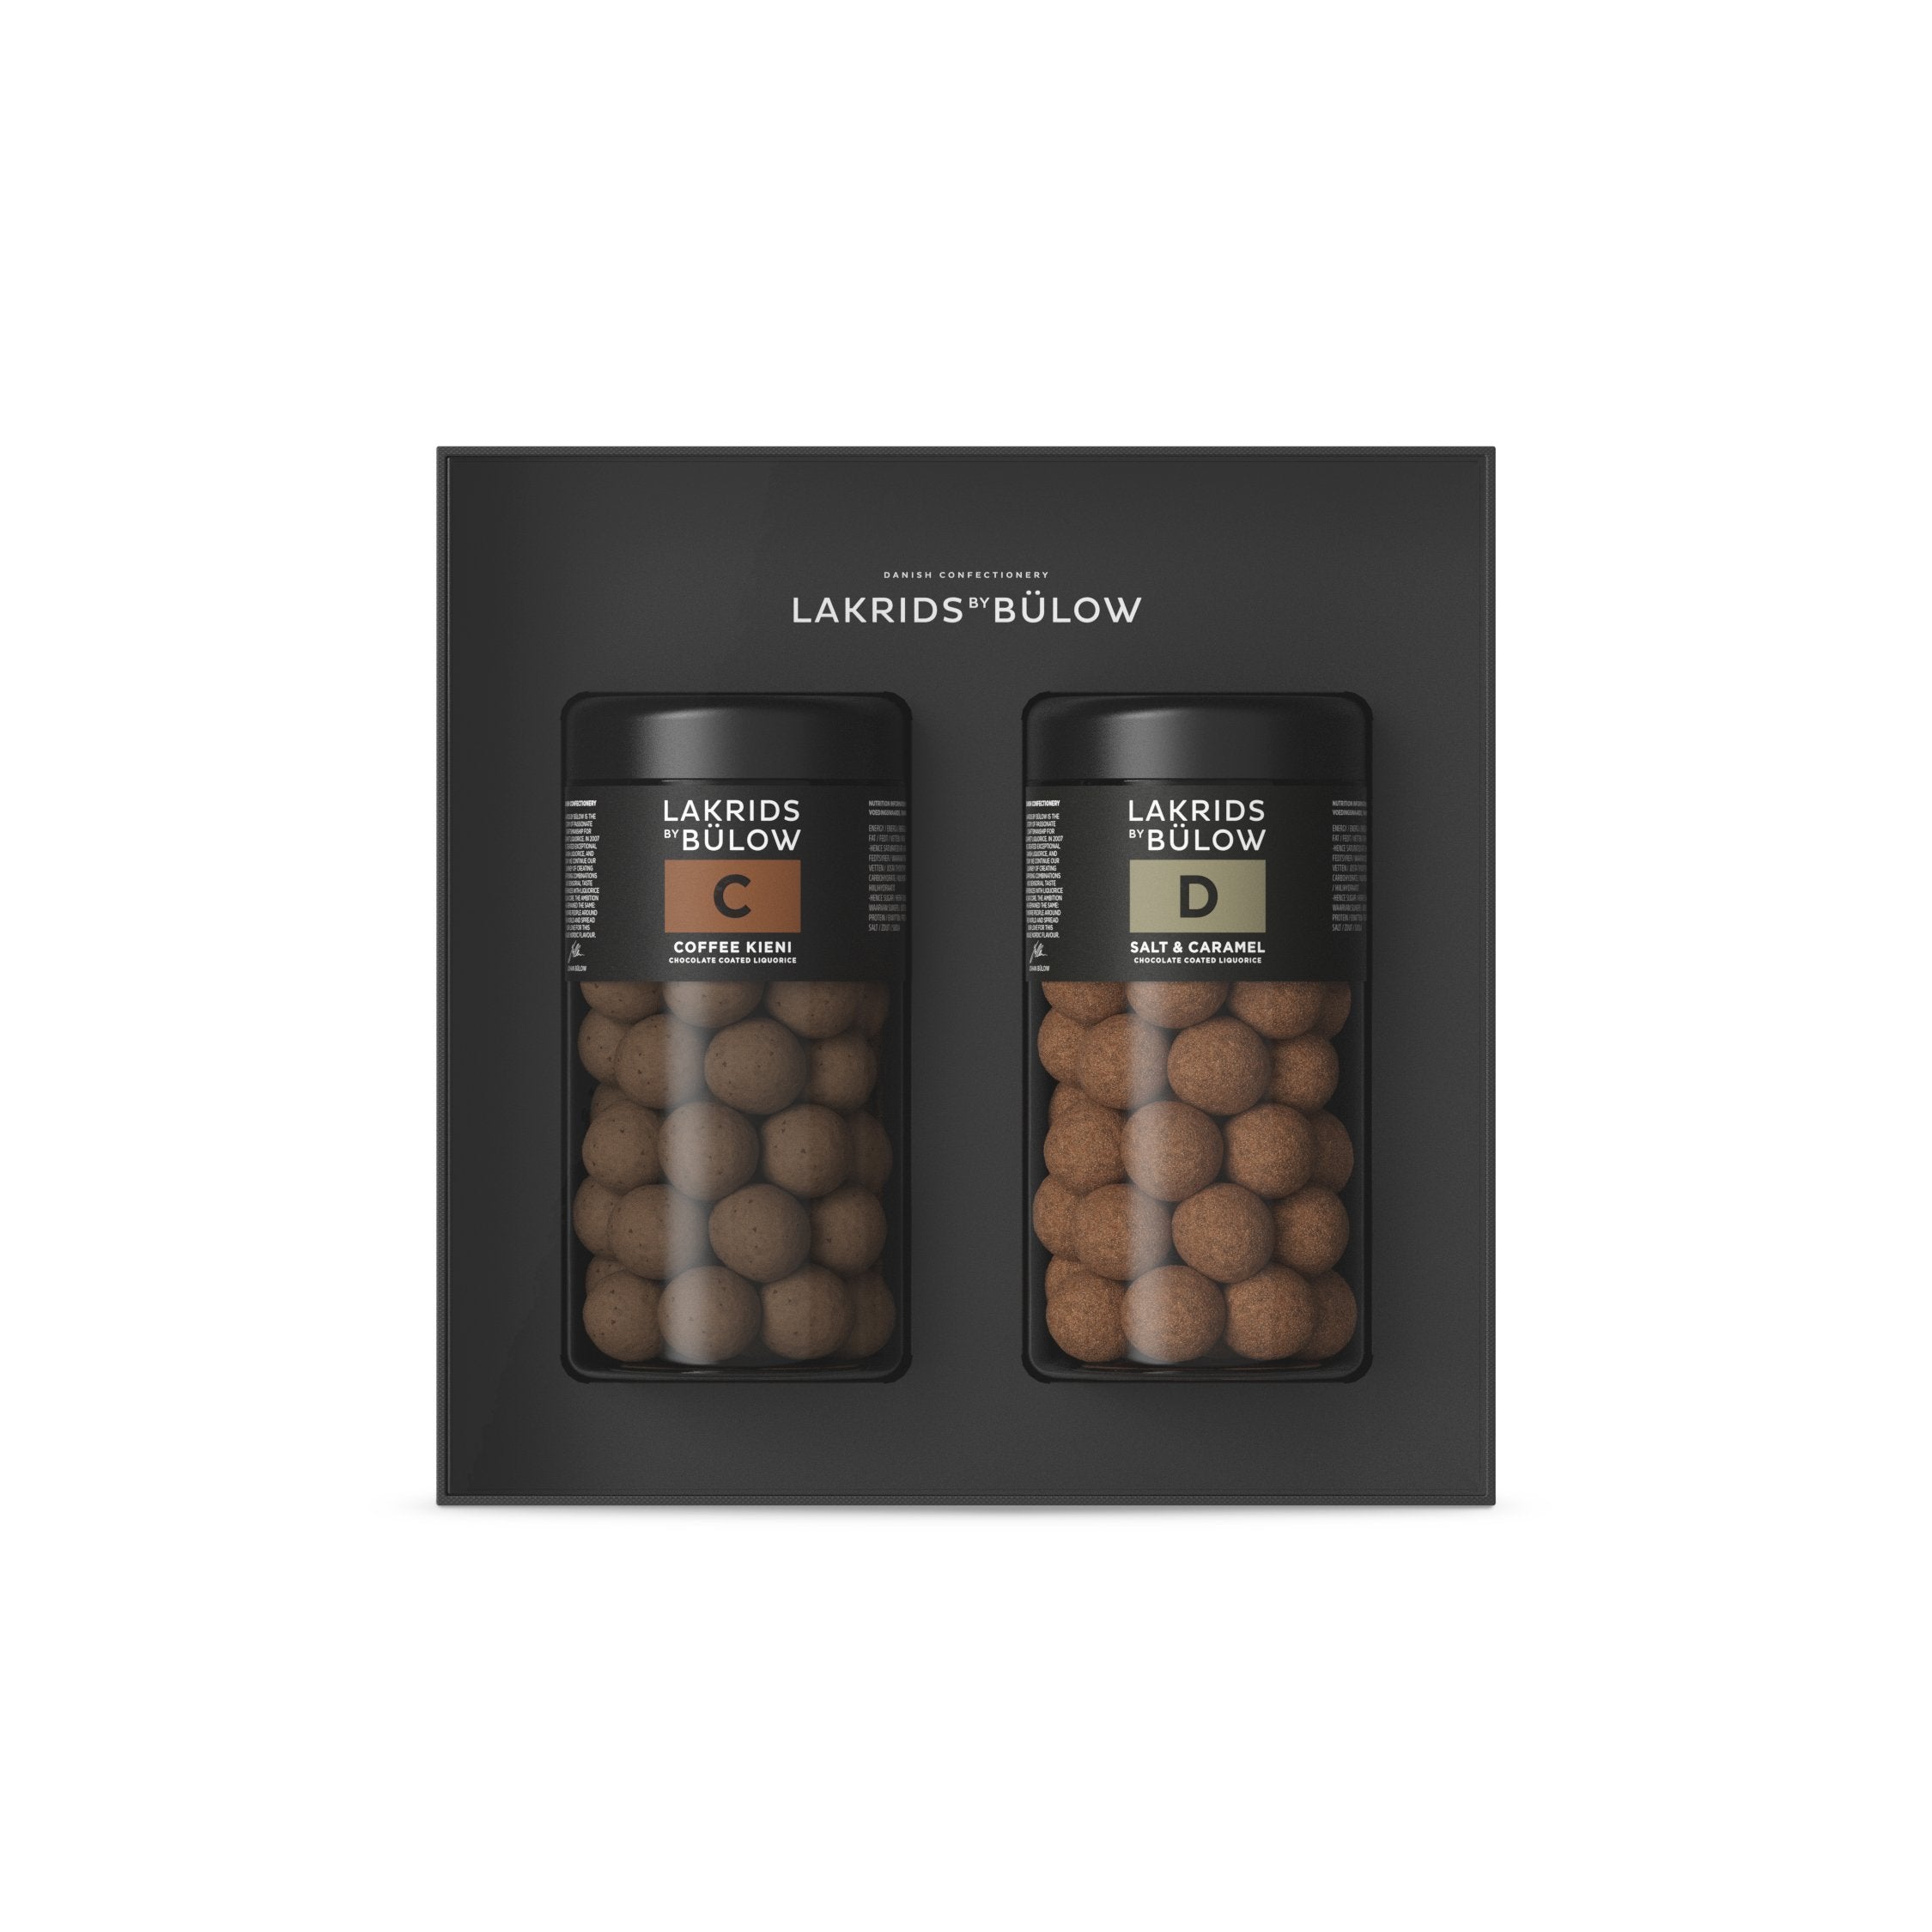 Lakrids od Bülow C Coffee Kieni, 295 gramů